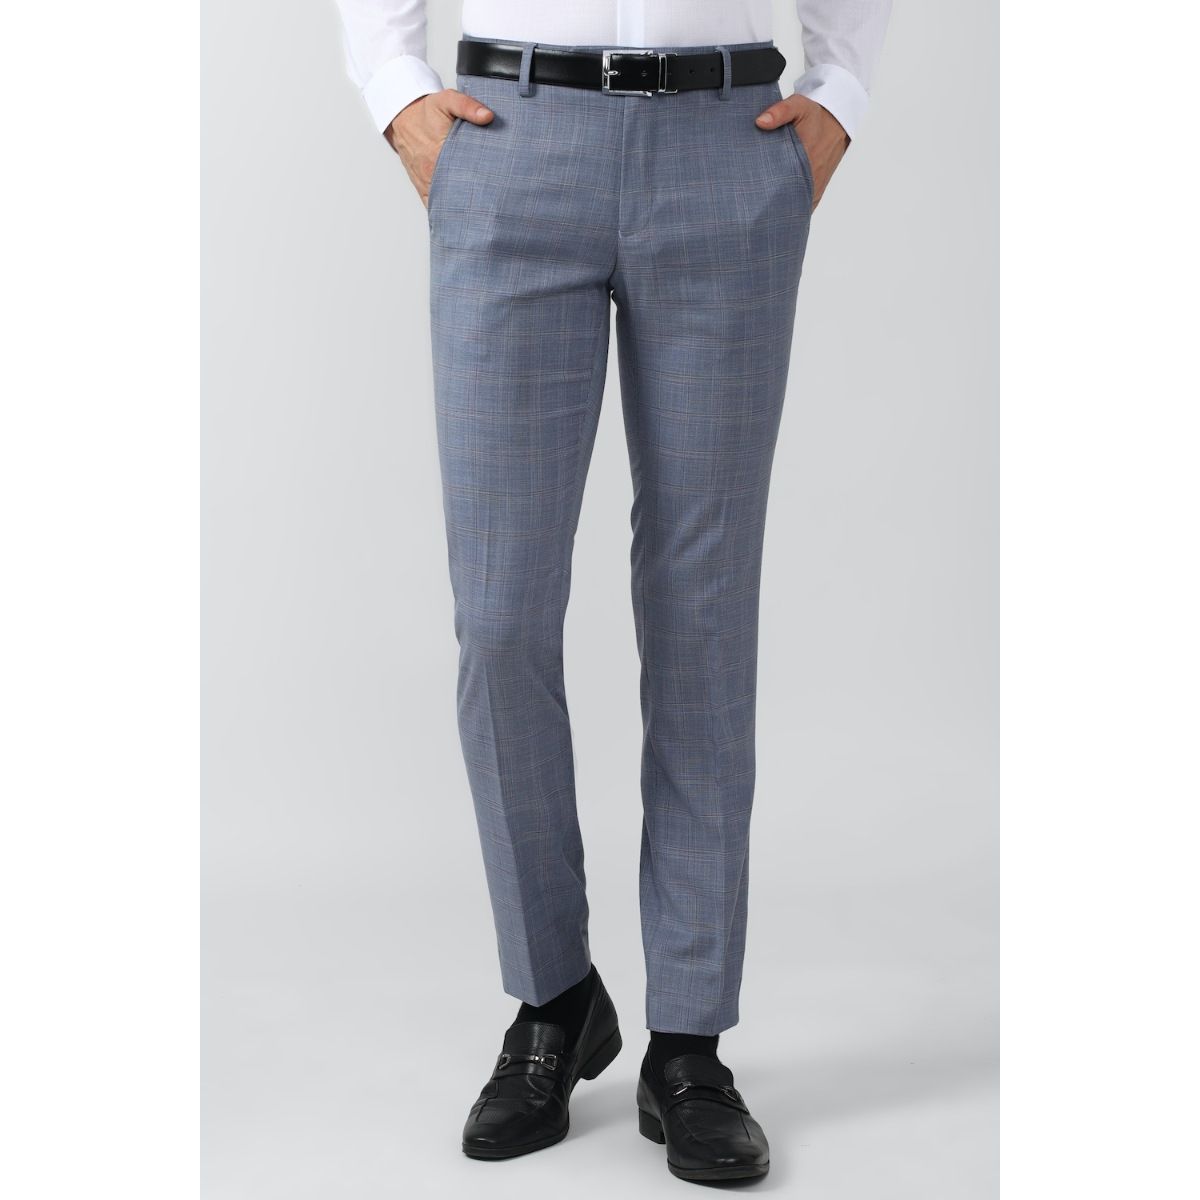 Buy Men Grey Stripe Slim Fit Formal Trousers Online - 662390 | Peter England